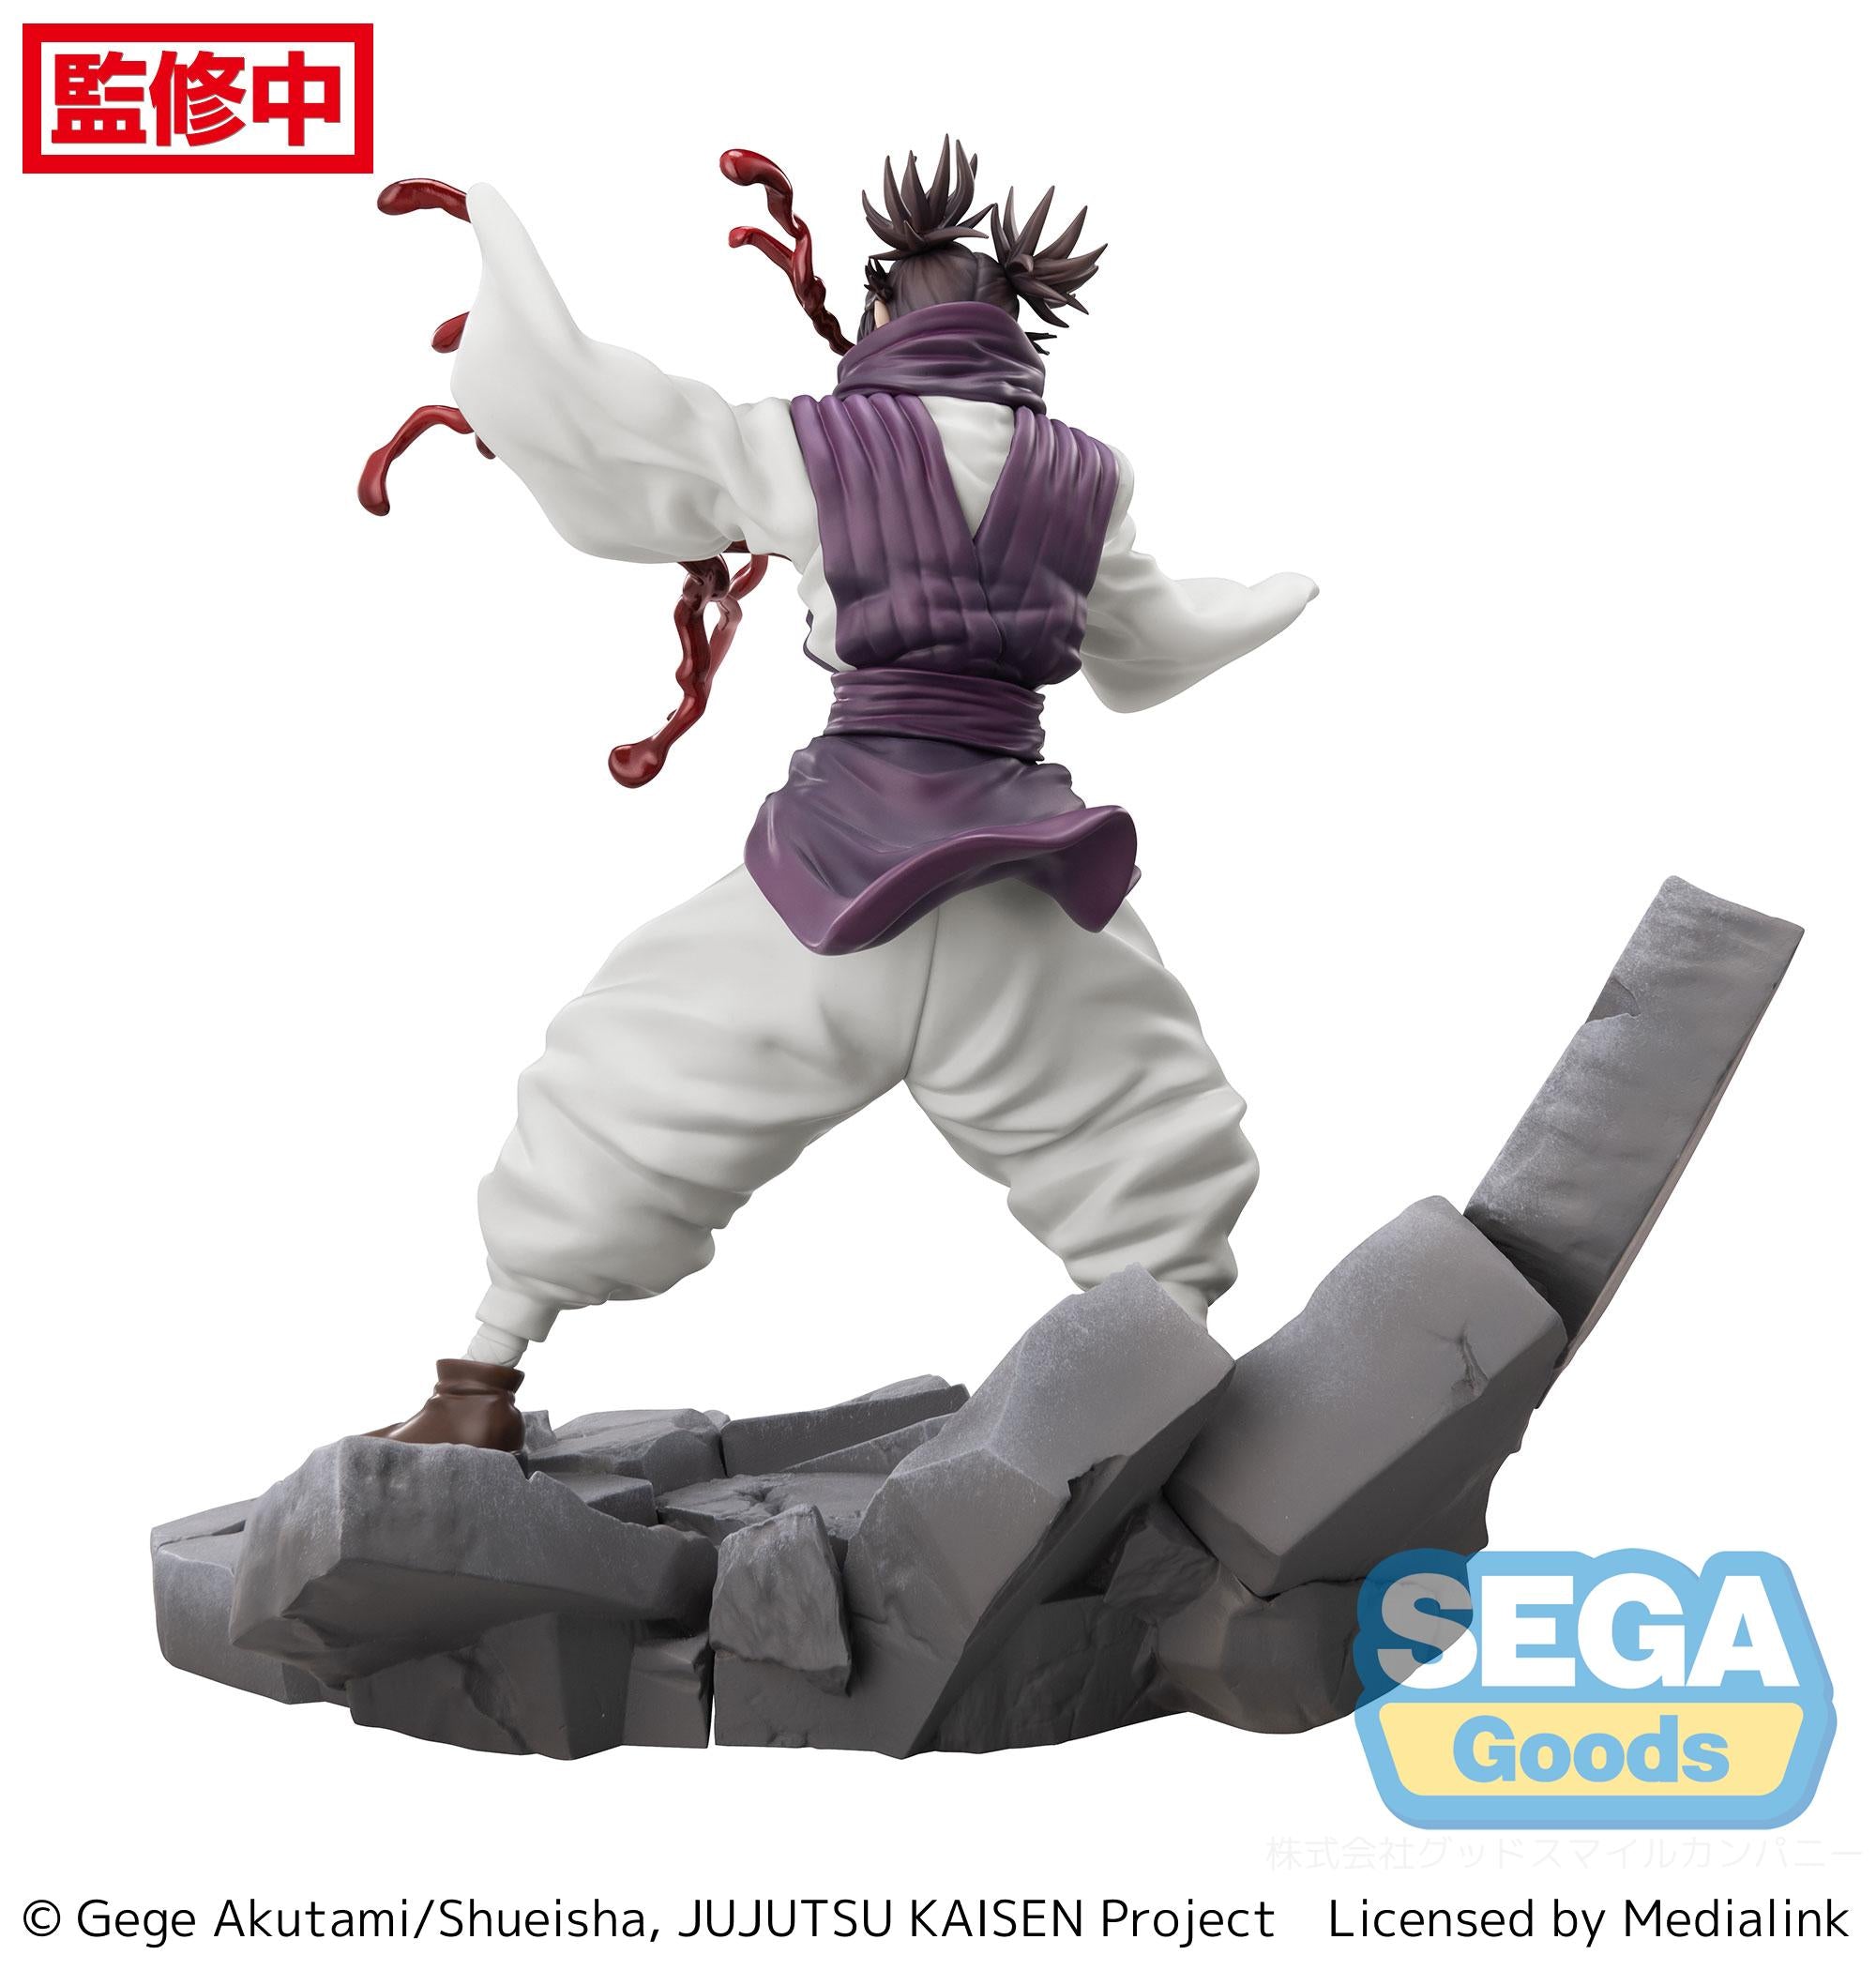 Sega Figures Luminasta: Jujutsu Kaisen Shibuya Incident - Choso